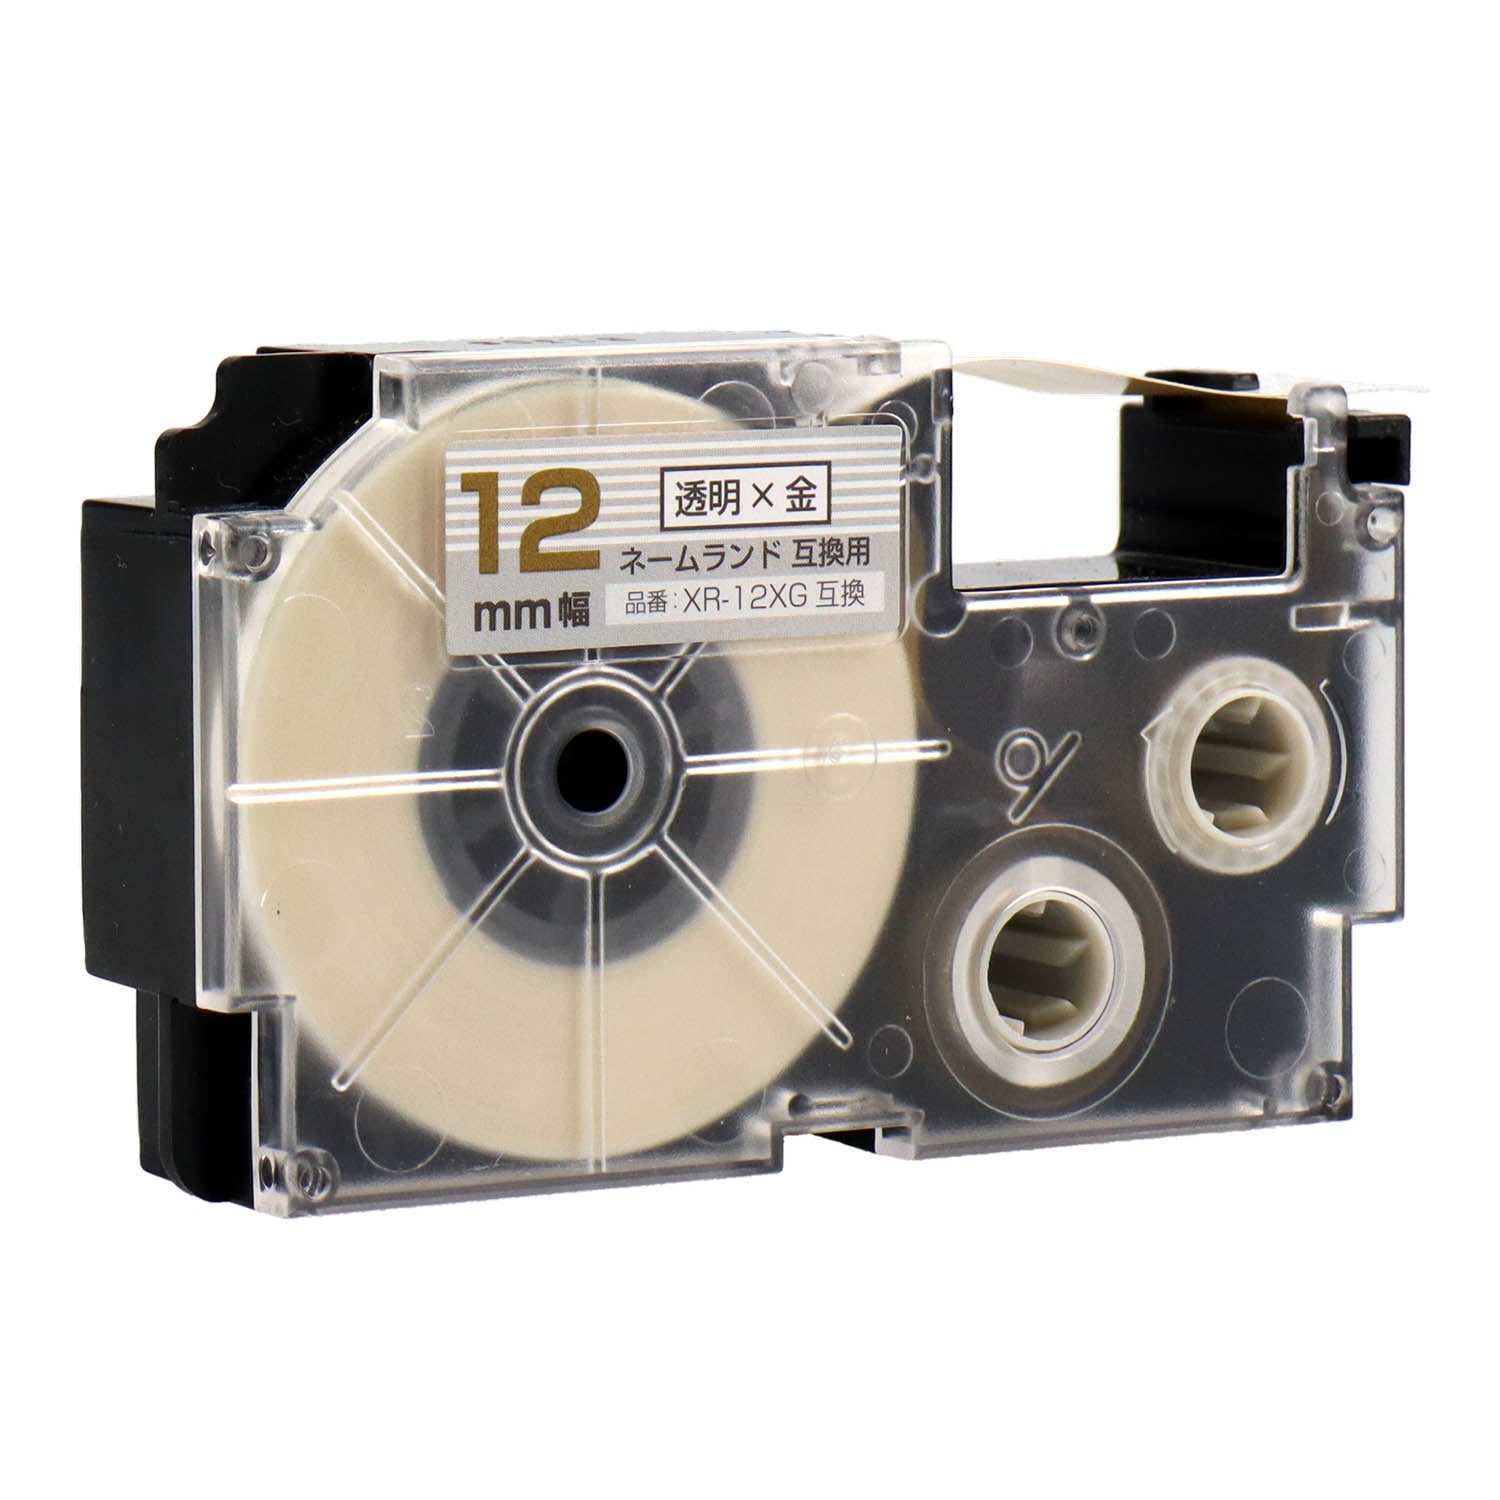 ネームランド用互換テープカートリッジ 透明×金文字 12mm